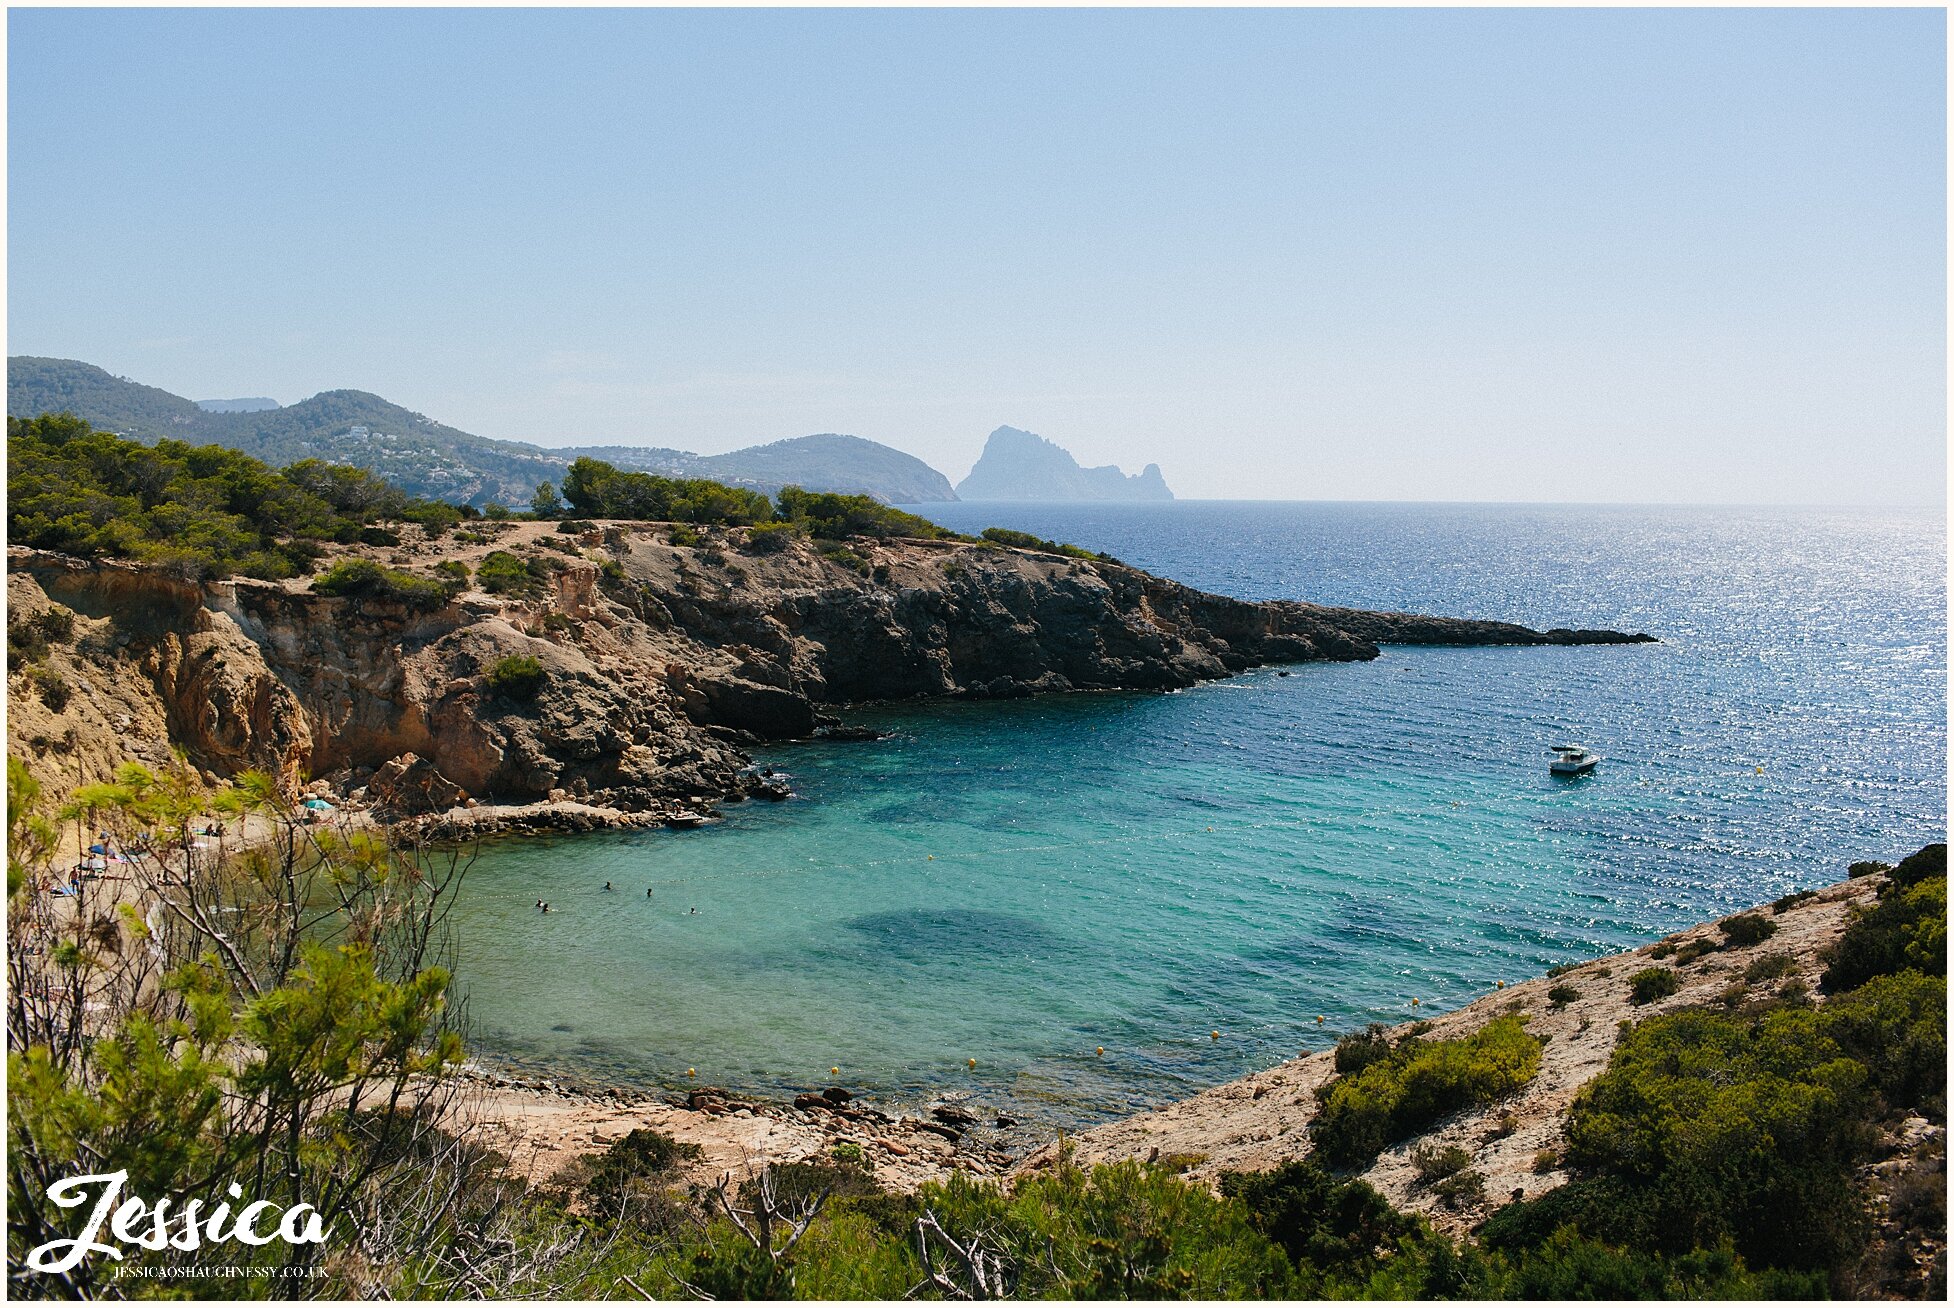 view of cala codolar beach taken from Elixir, Ibiza